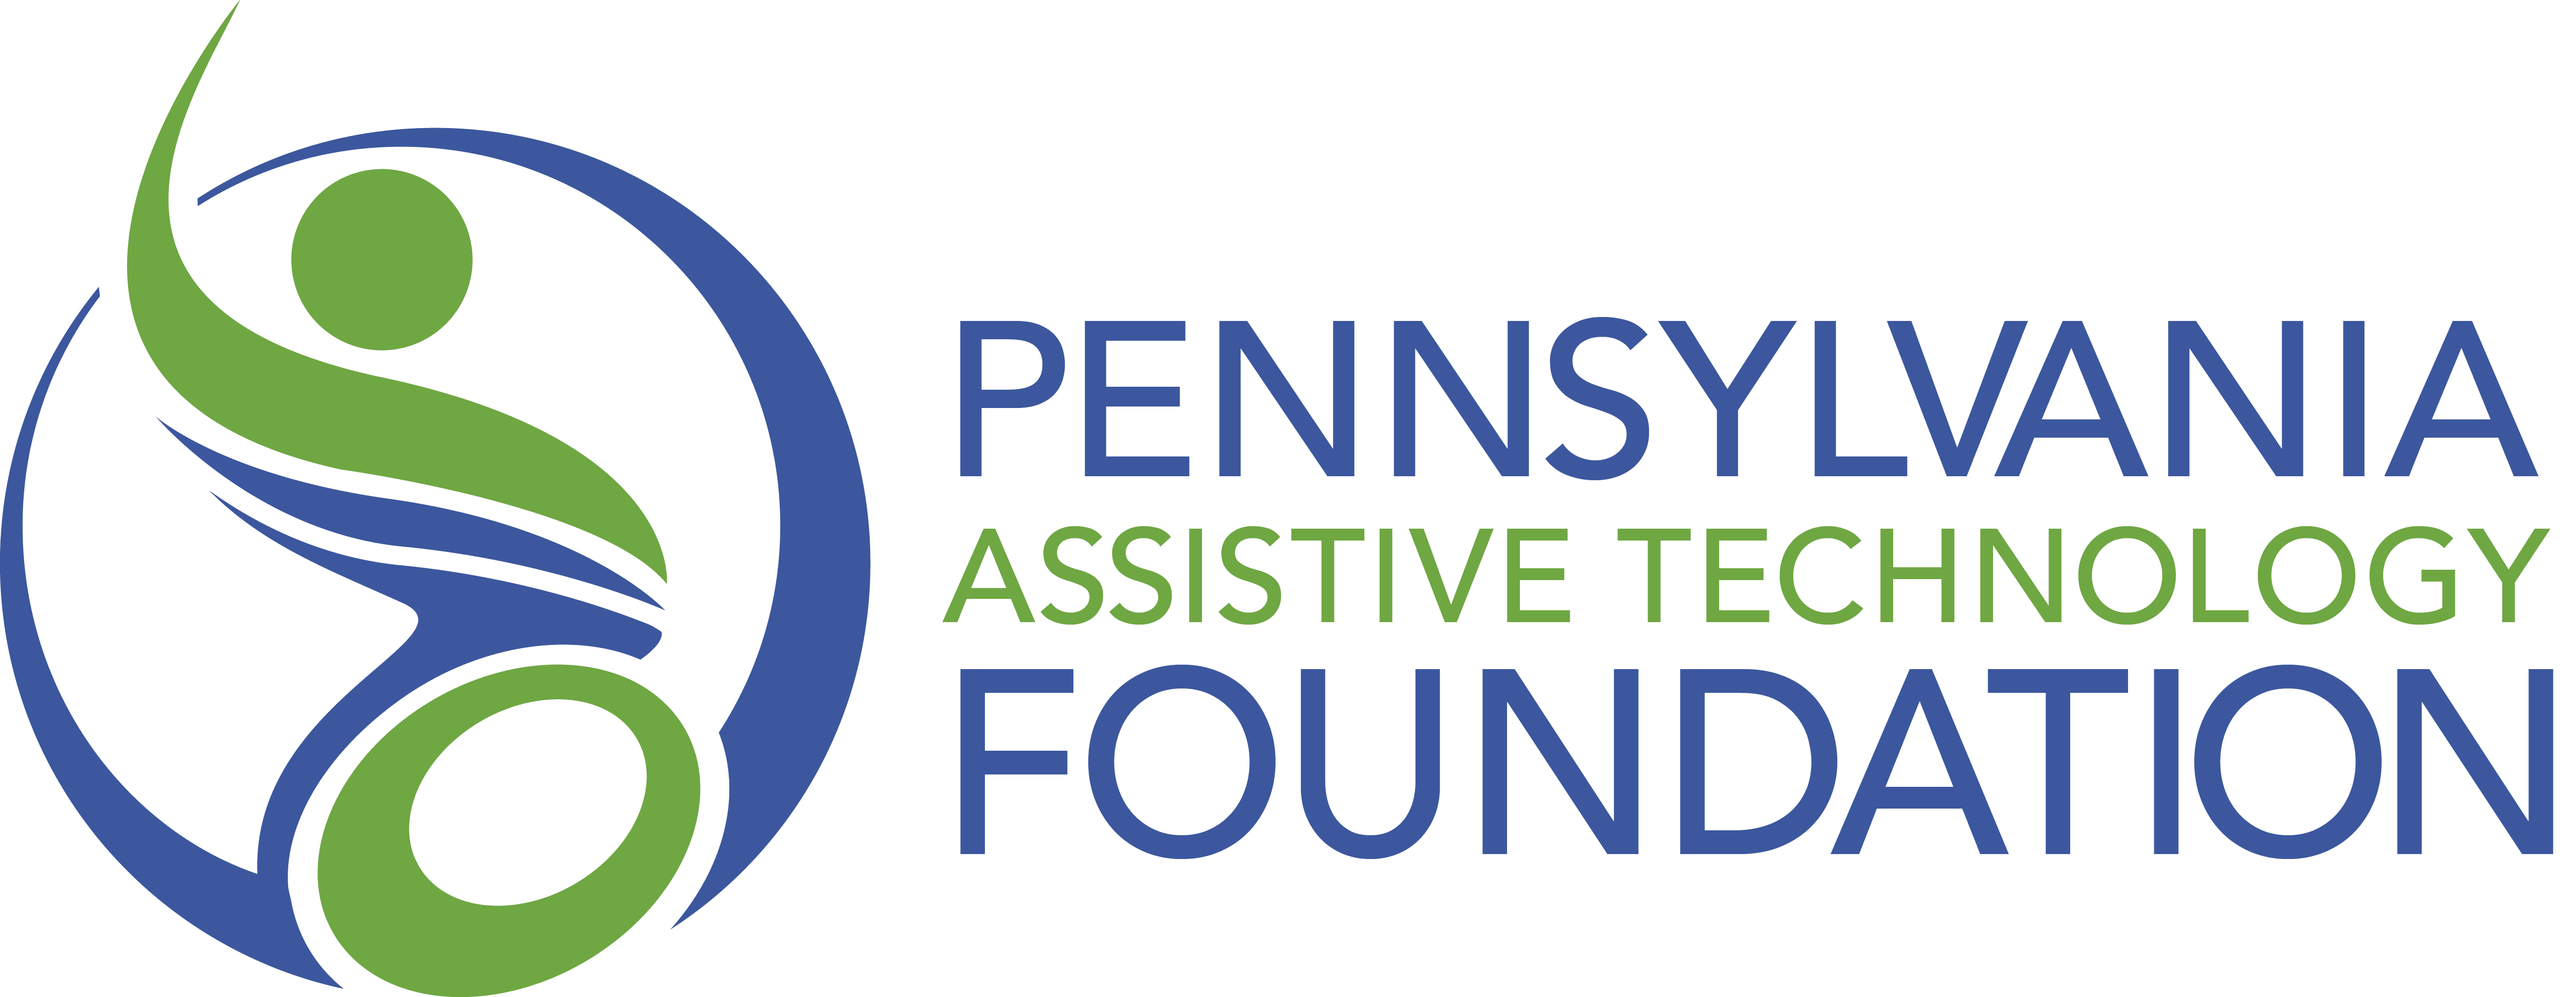 PA Assistive Technology Foundation logo